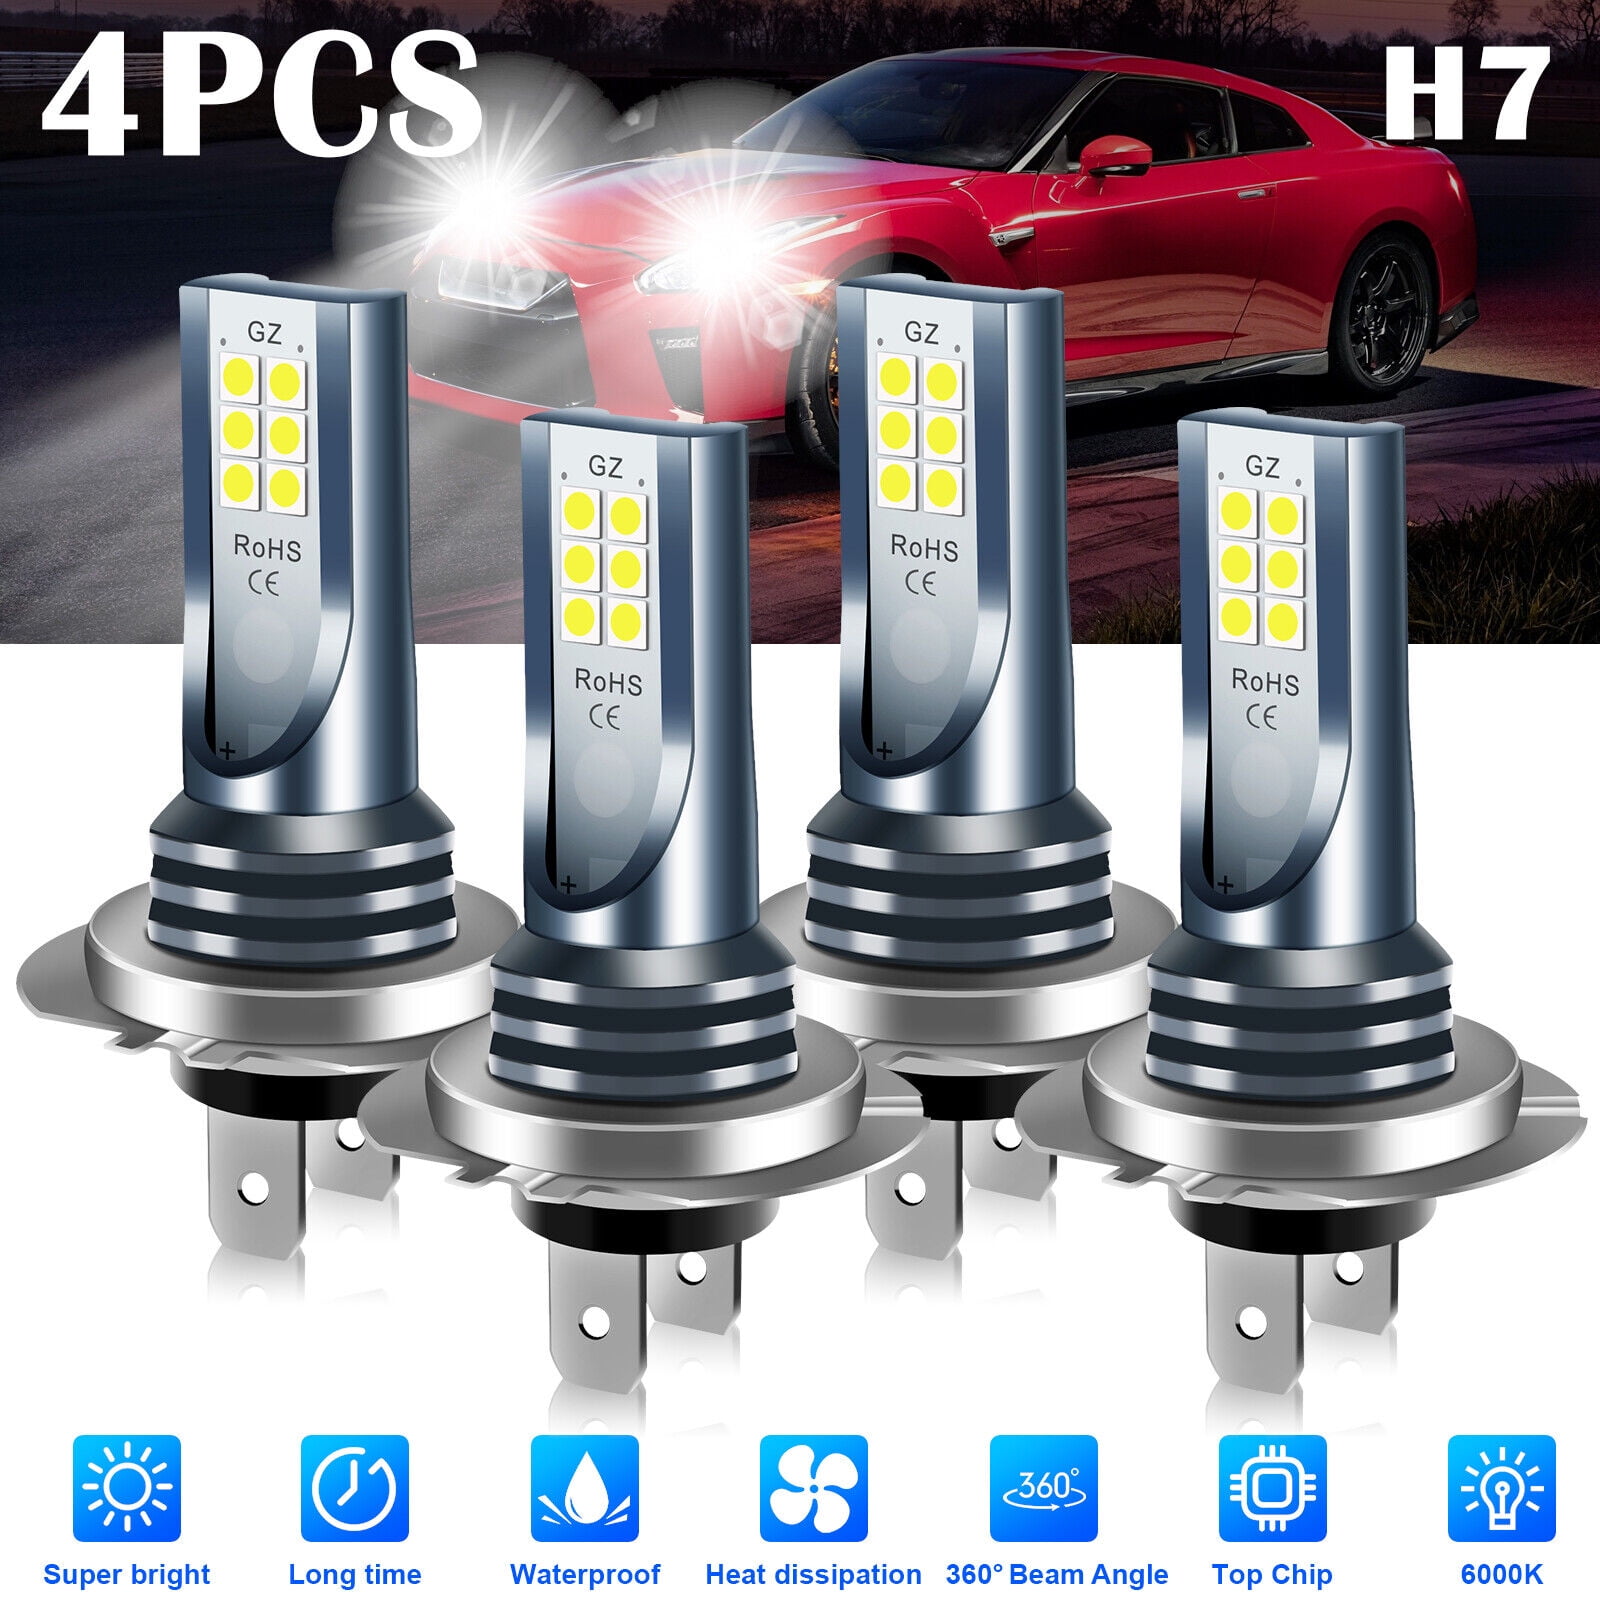 Ampoules effet xenon H7 24V 100W 6000K Next-Tech®